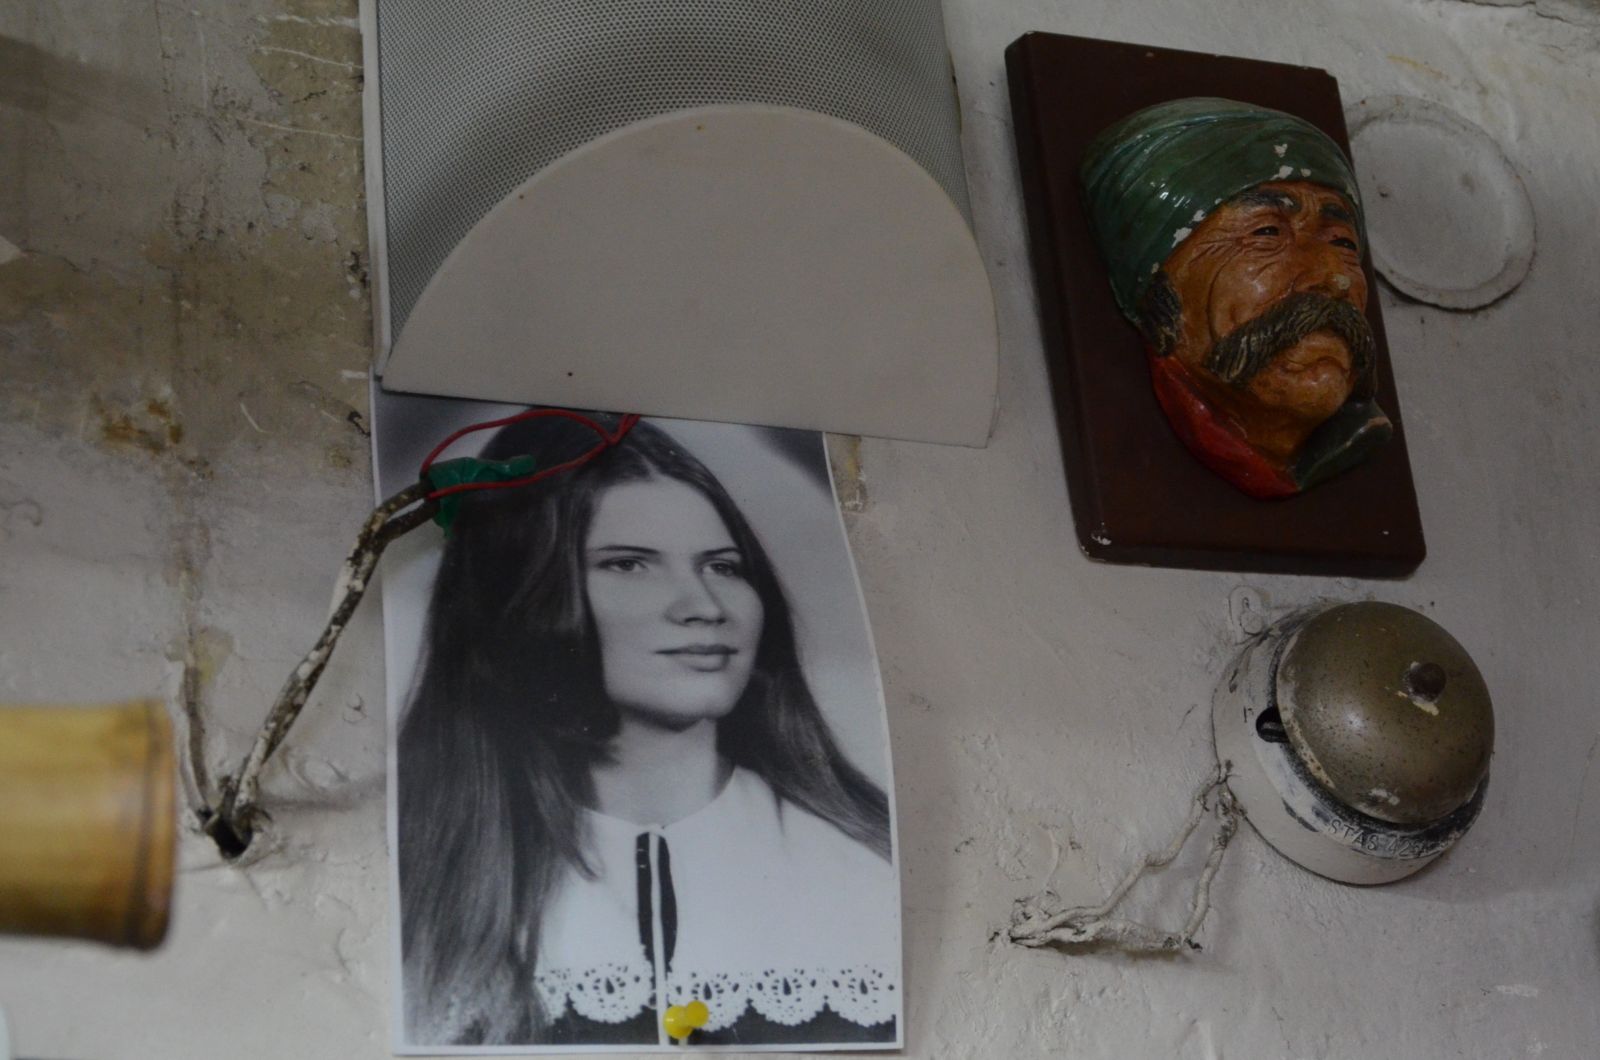 Másról nem, de Kézdi Imola színésznőről láttunk egy fiatalkori fényképet a raktárban.
